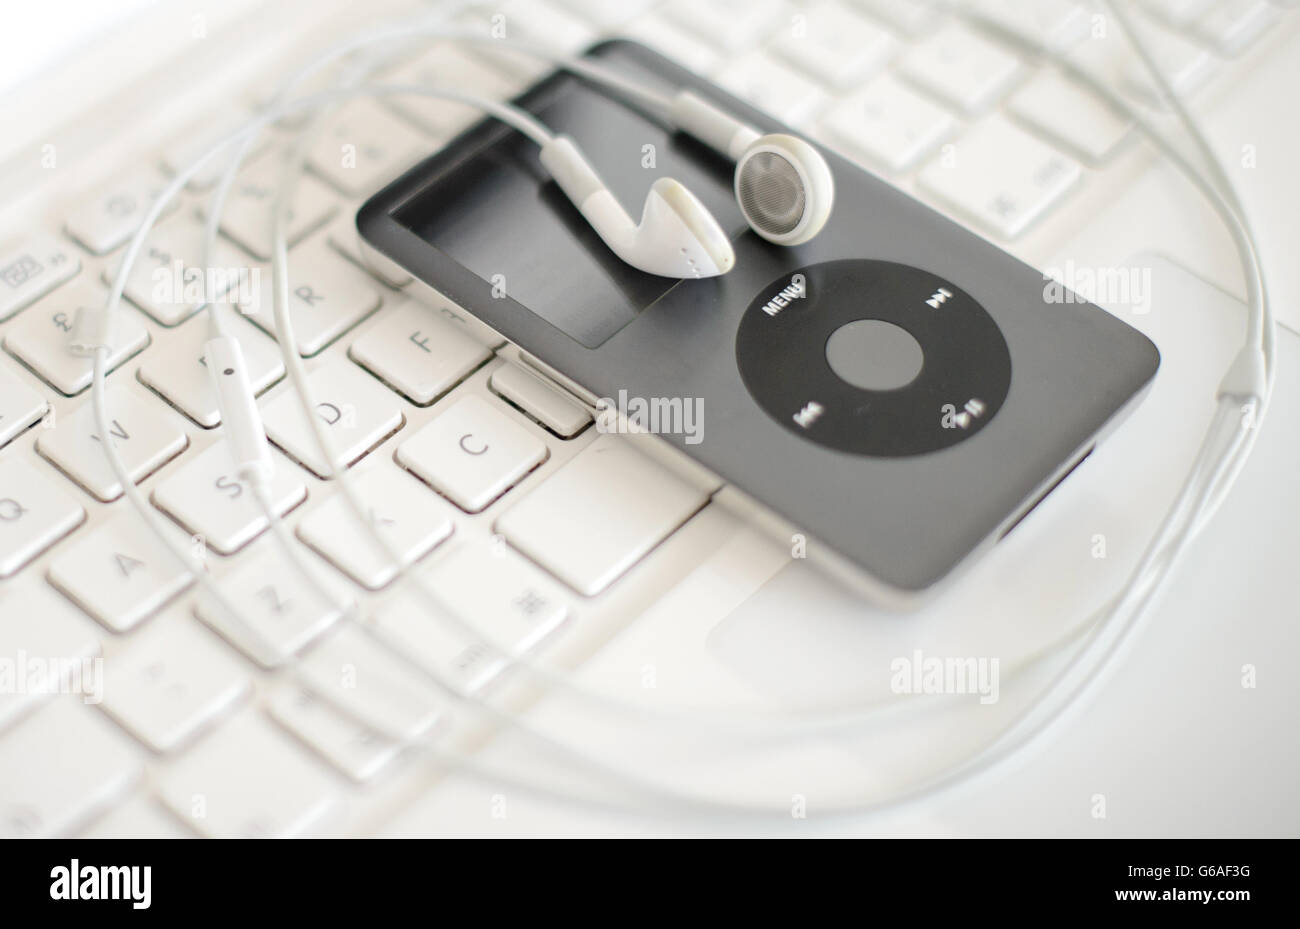 La photo générique montre un lecteur iPod mp3 d'Apple assis sur un clavier  d'ordinateur portable. APPUYEZ SUR ASSOCIATION photo. Date de la photo:  Mardi 6 août 2013. Le crédit photo devrait se